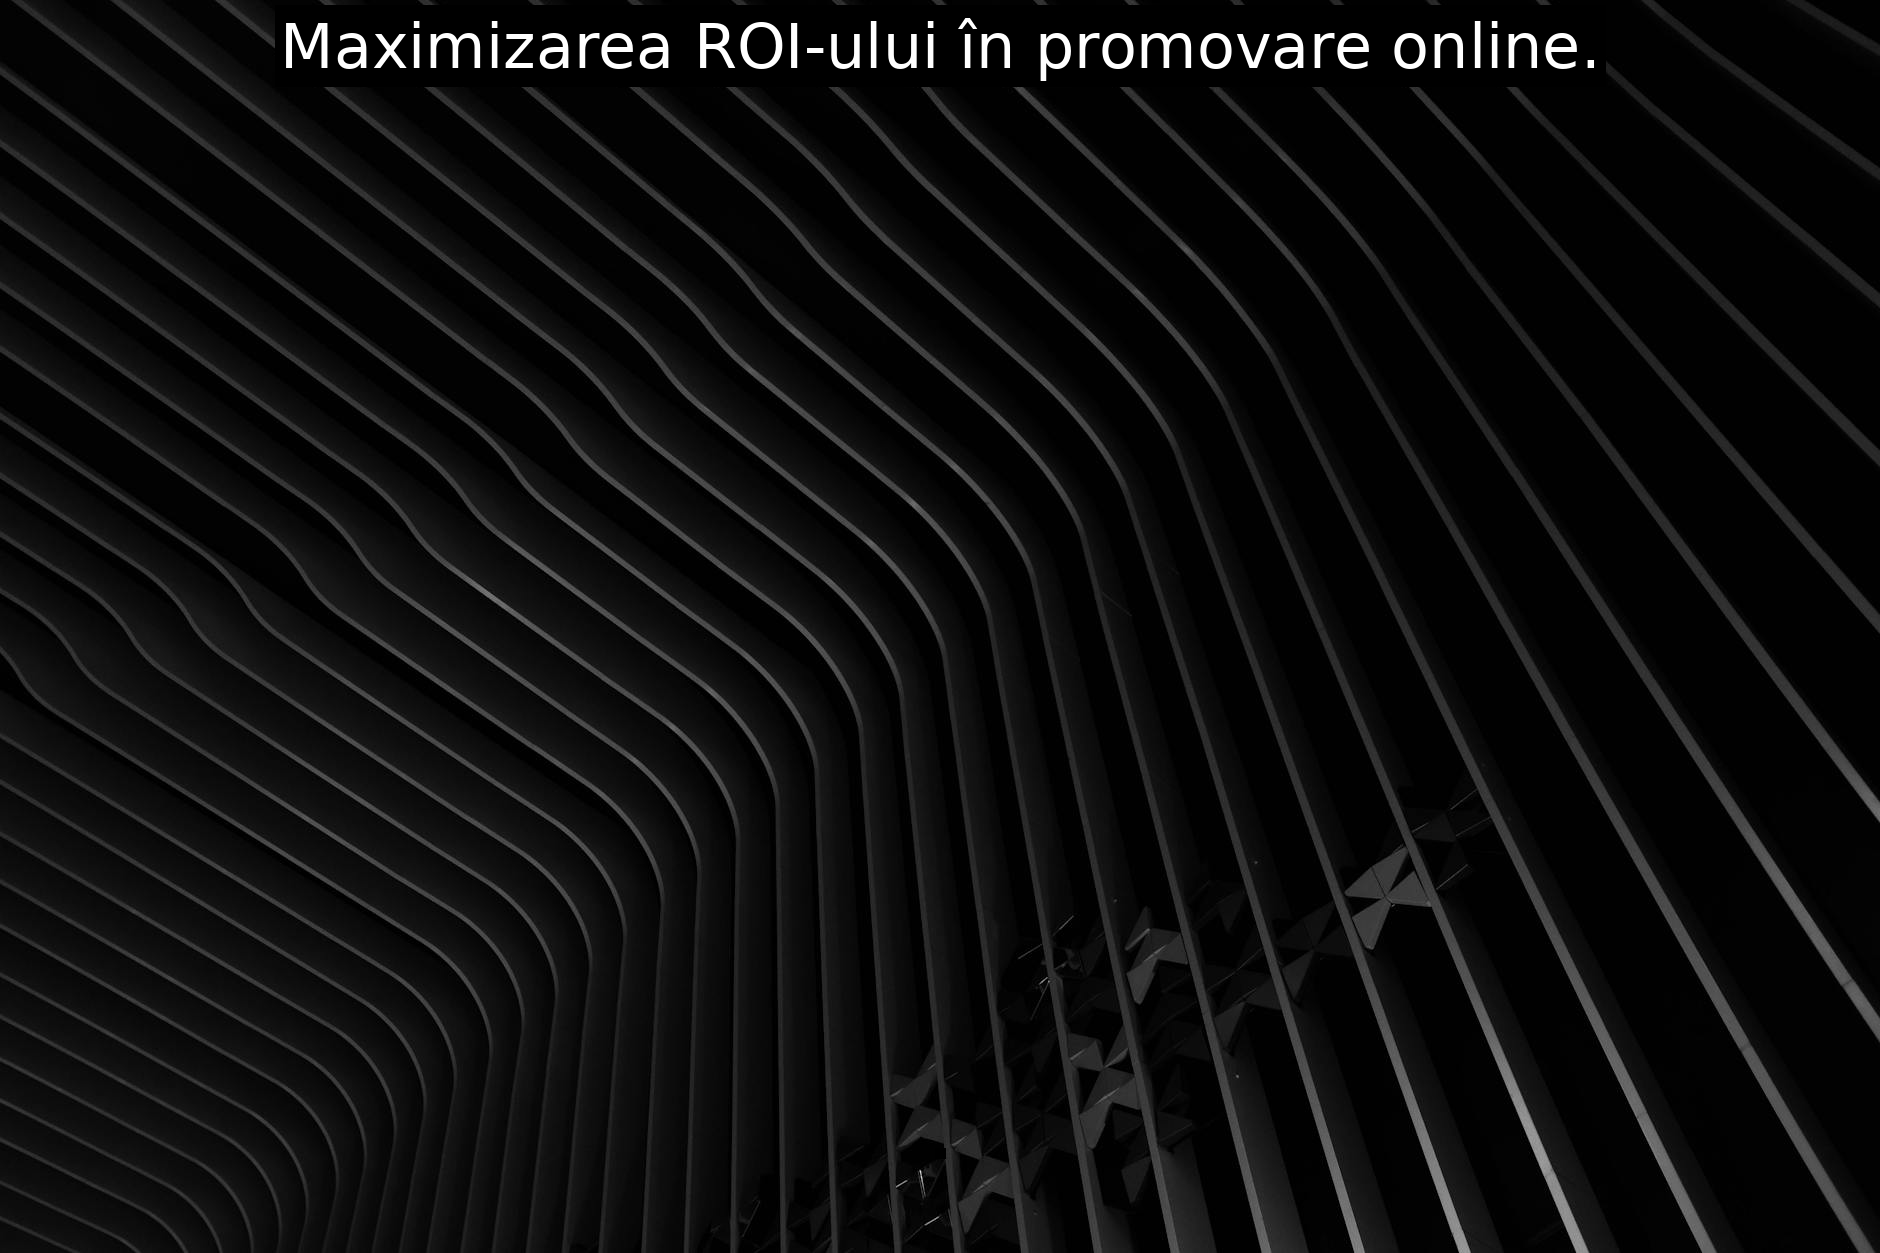 Maximizarea ROI-ului în promovare online.